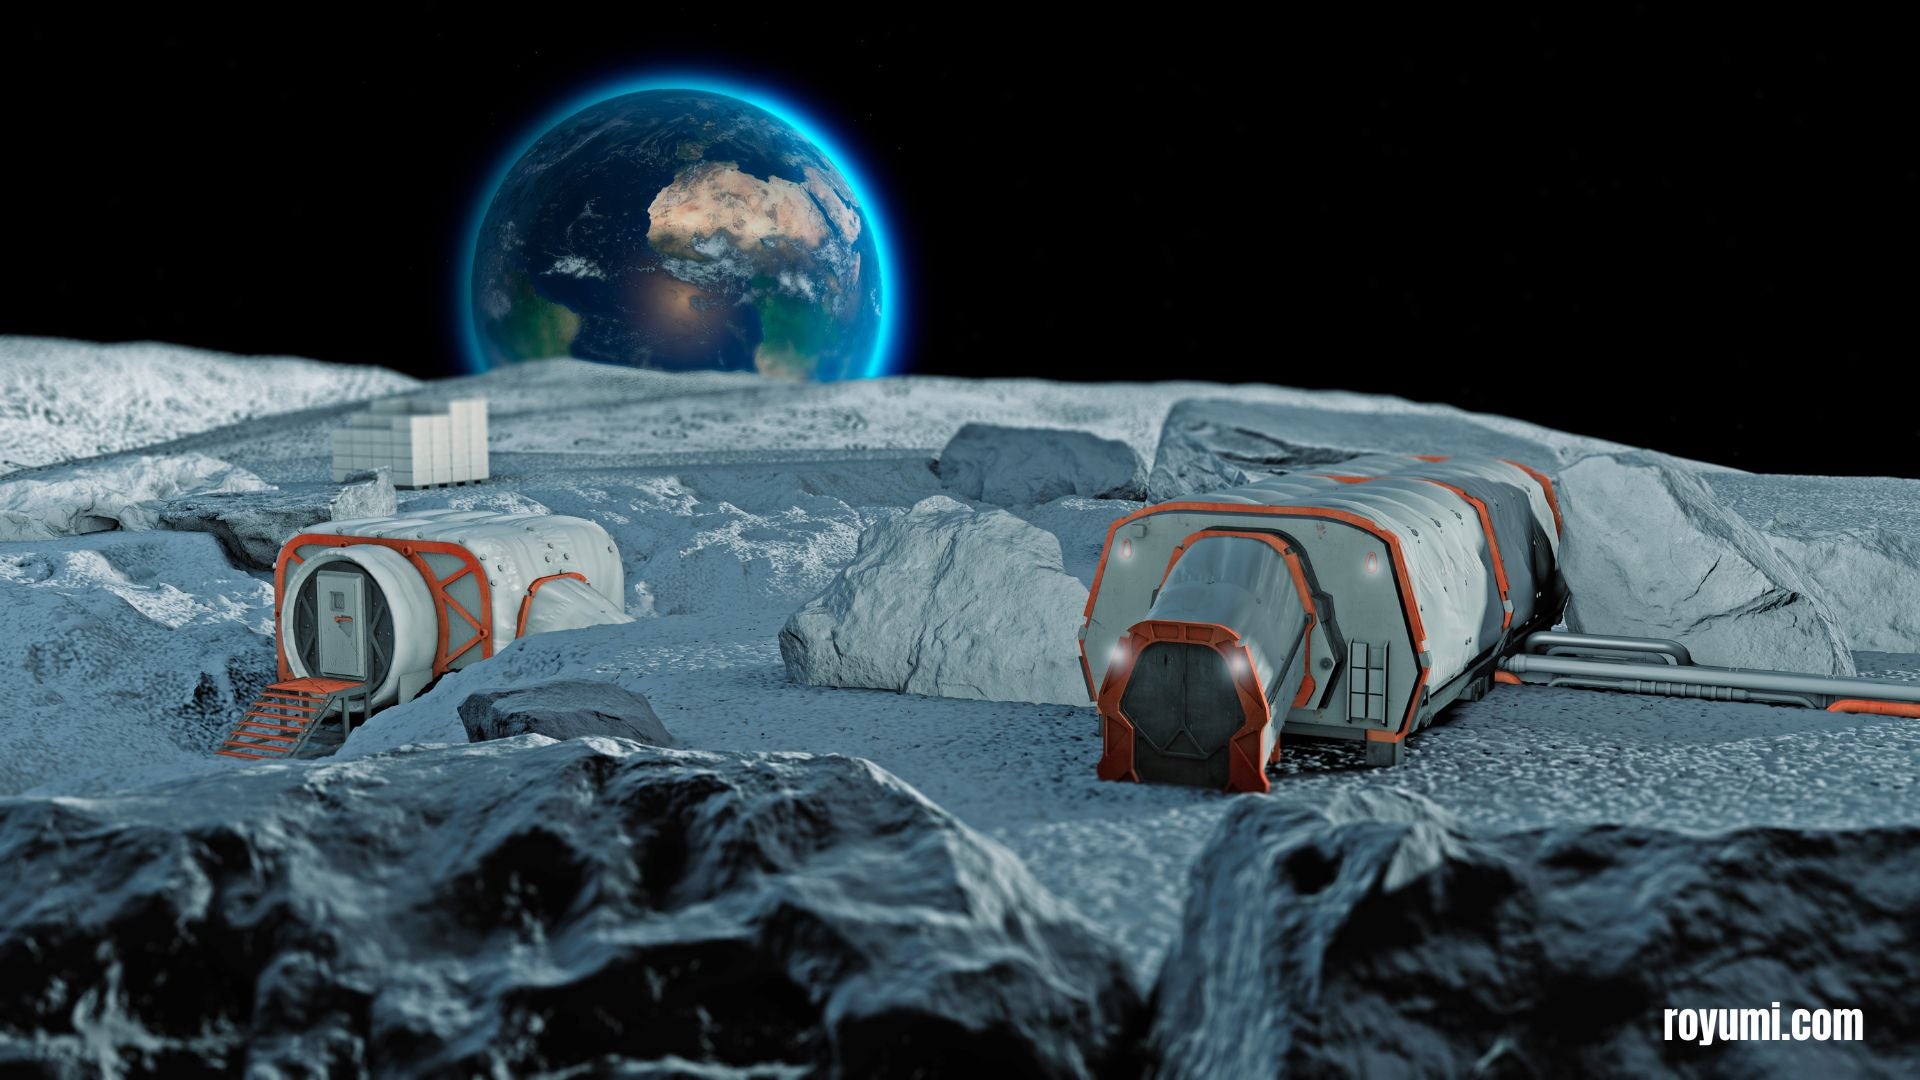 月に住むのはどんな感じか: 月面環境における都市計画と建築の課題